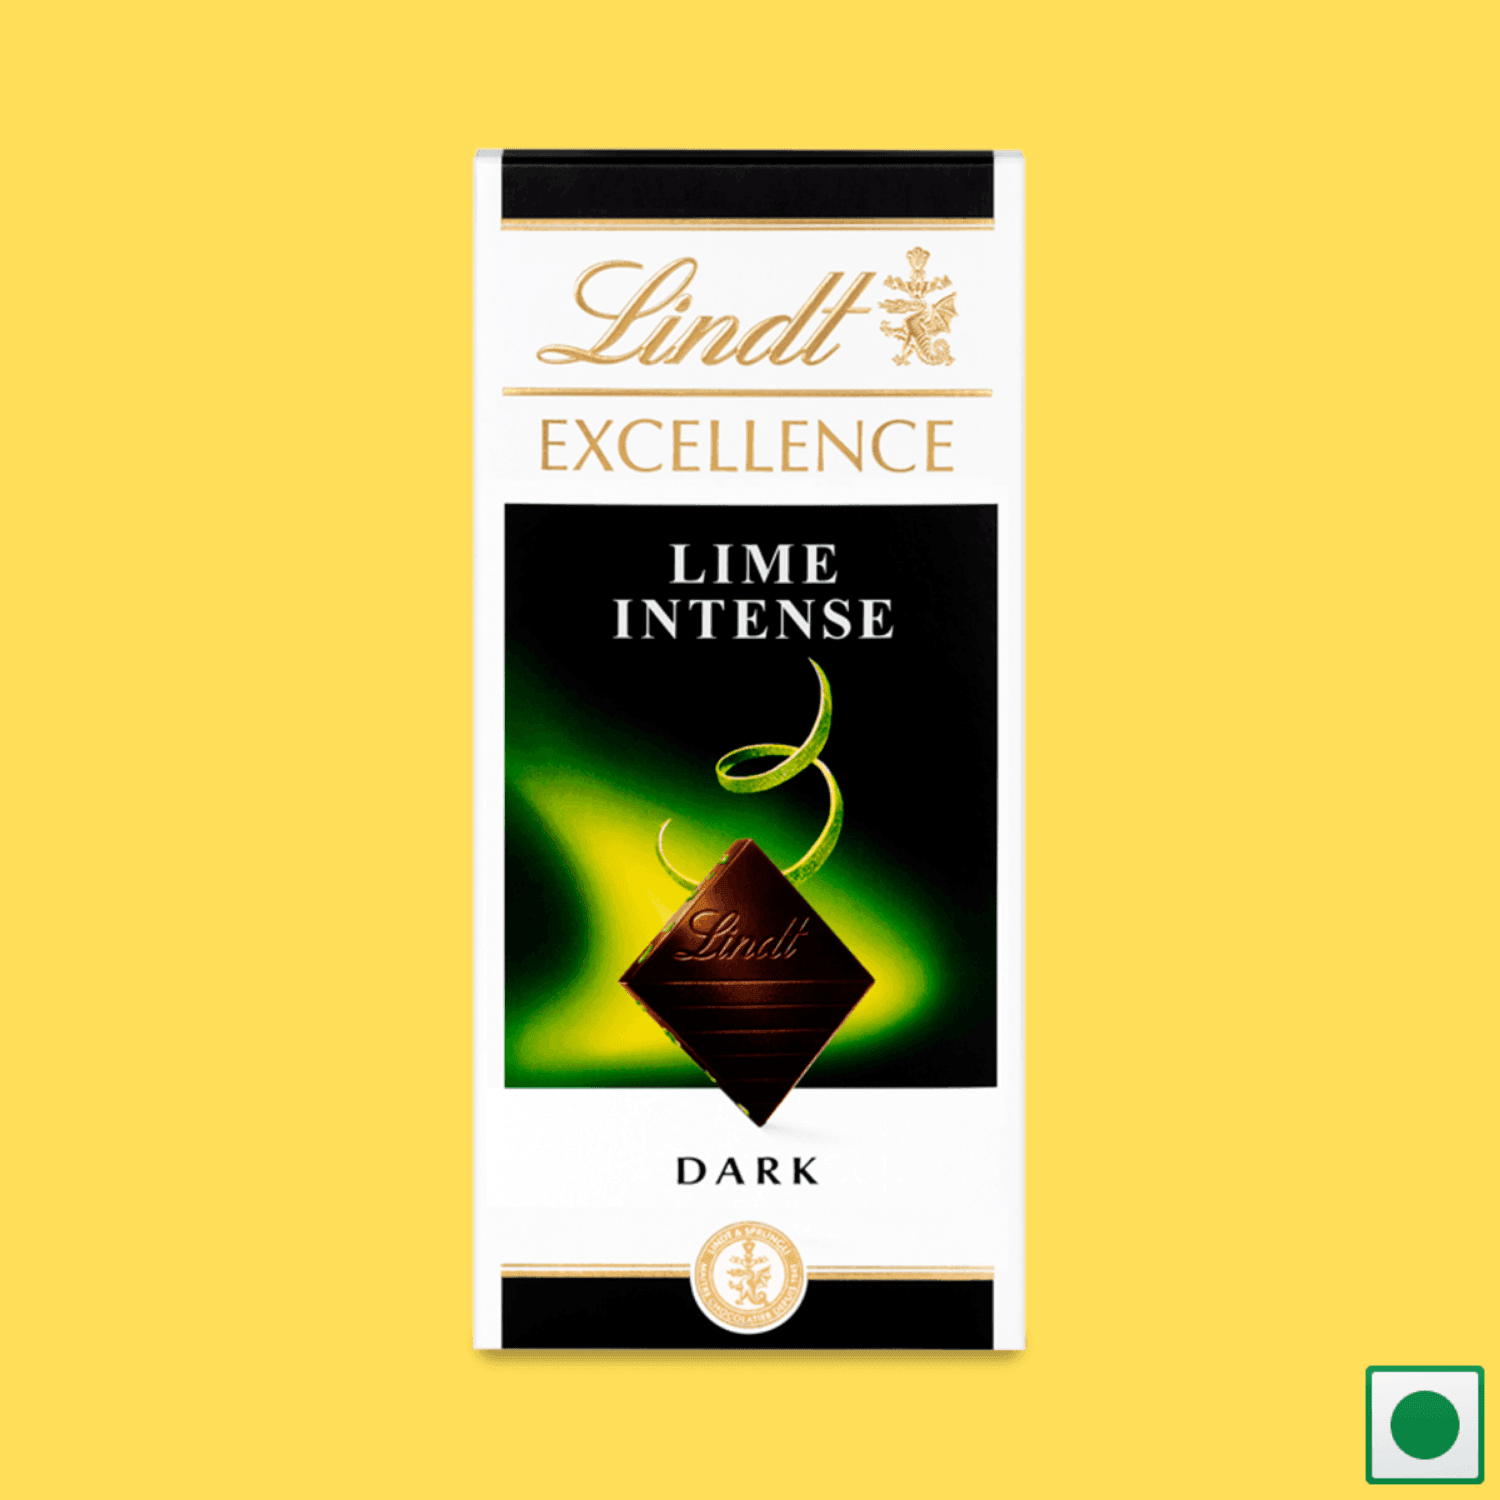 Lindt Excellence Dark Lime Intense Bar, 100g (Imported) - Super 7 Mart